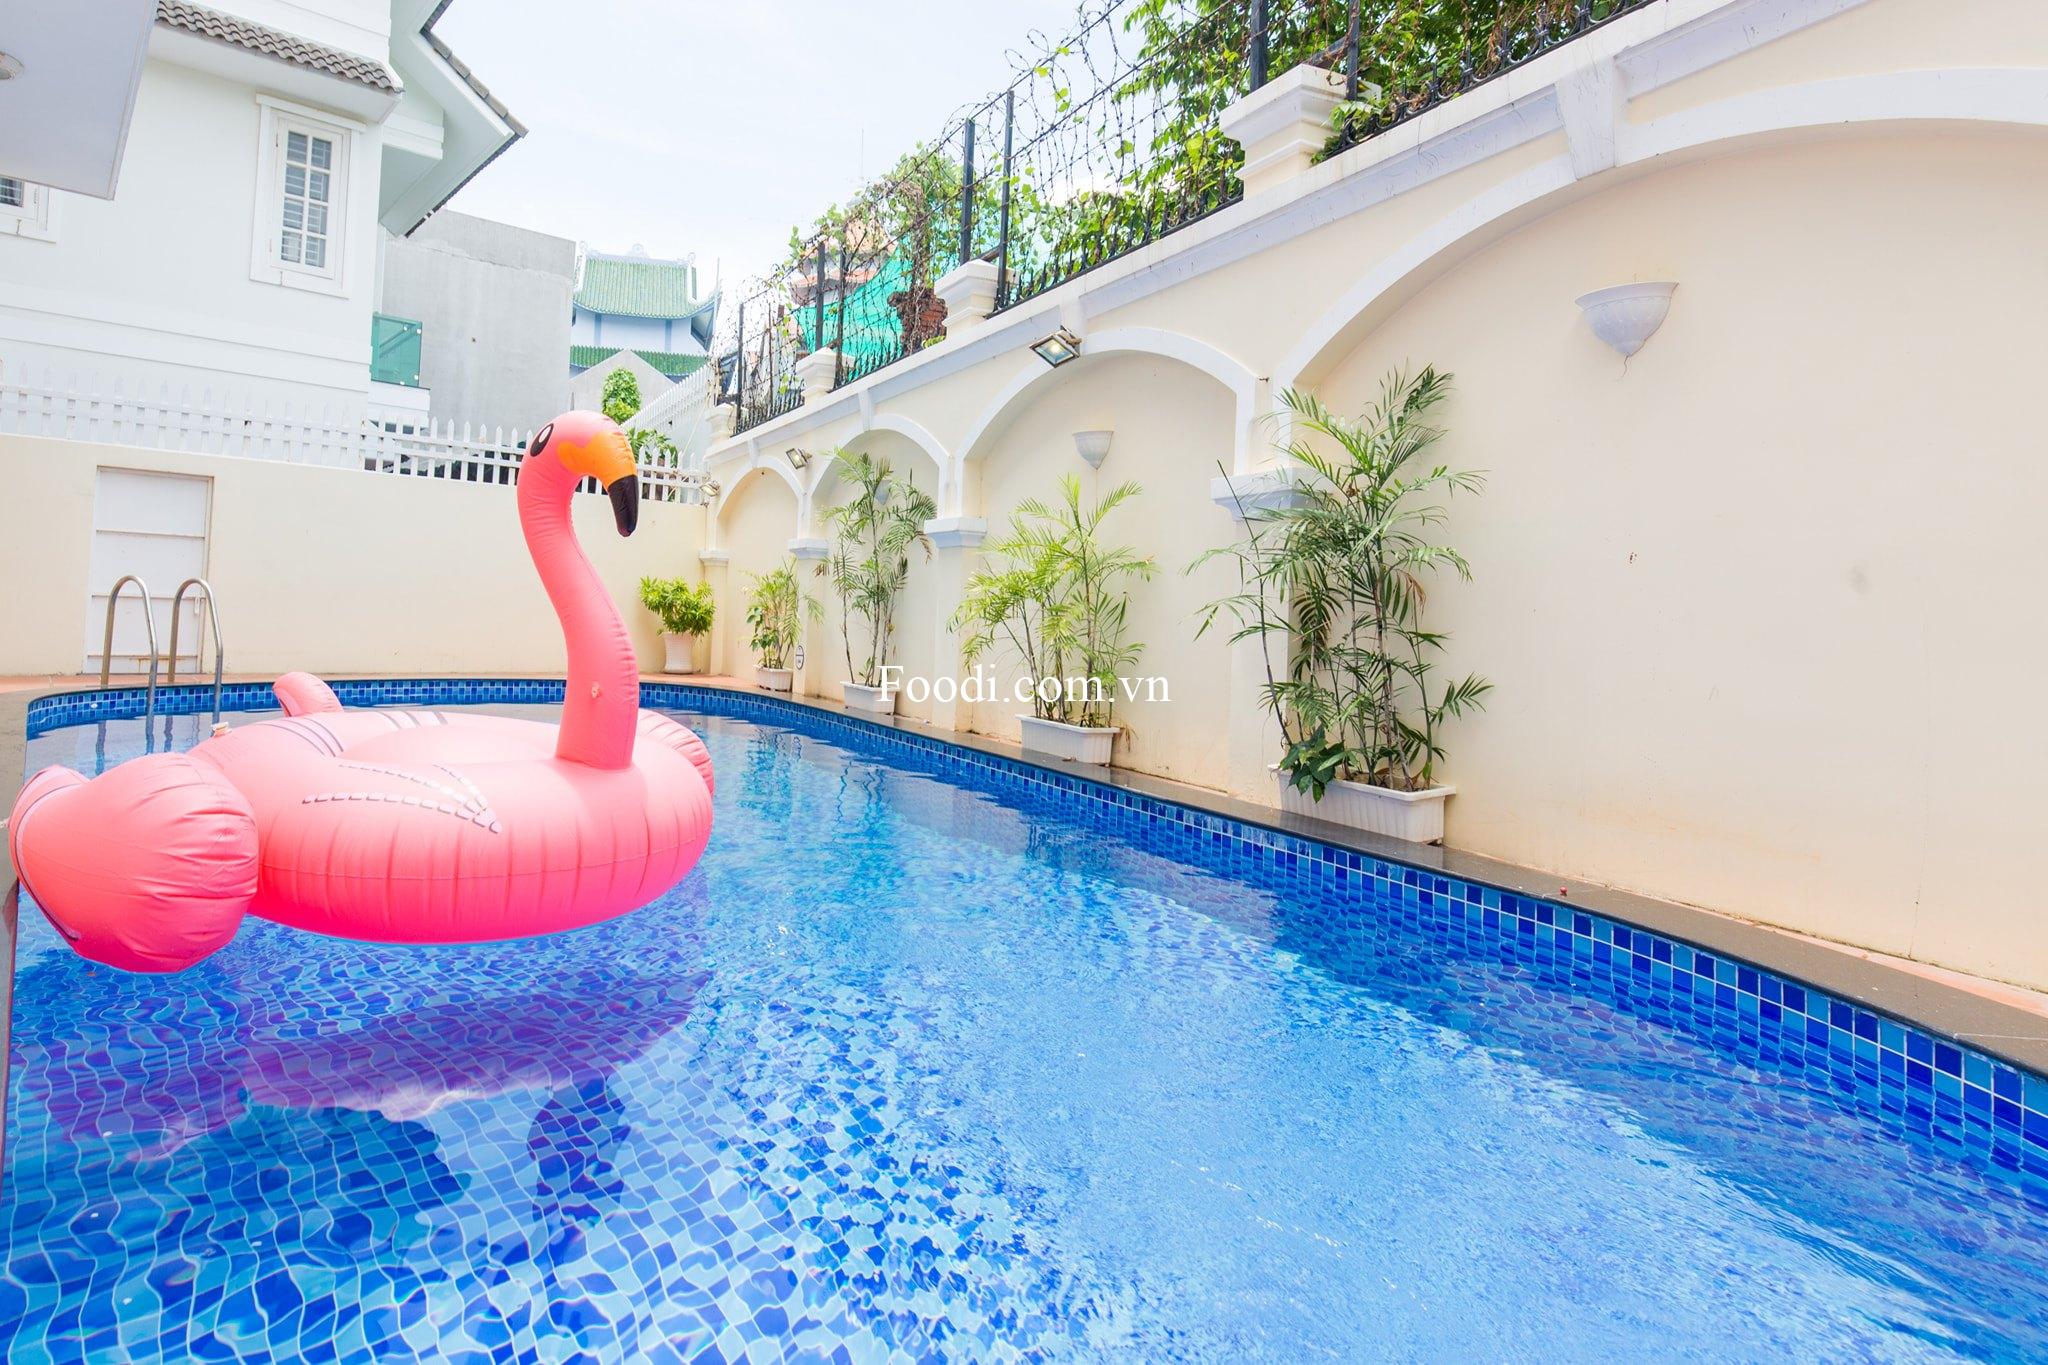 Top 18 Biệt thự villa Vũng Tàu giá rẻ đẹp gần biển có hồ bơi nguyên căn